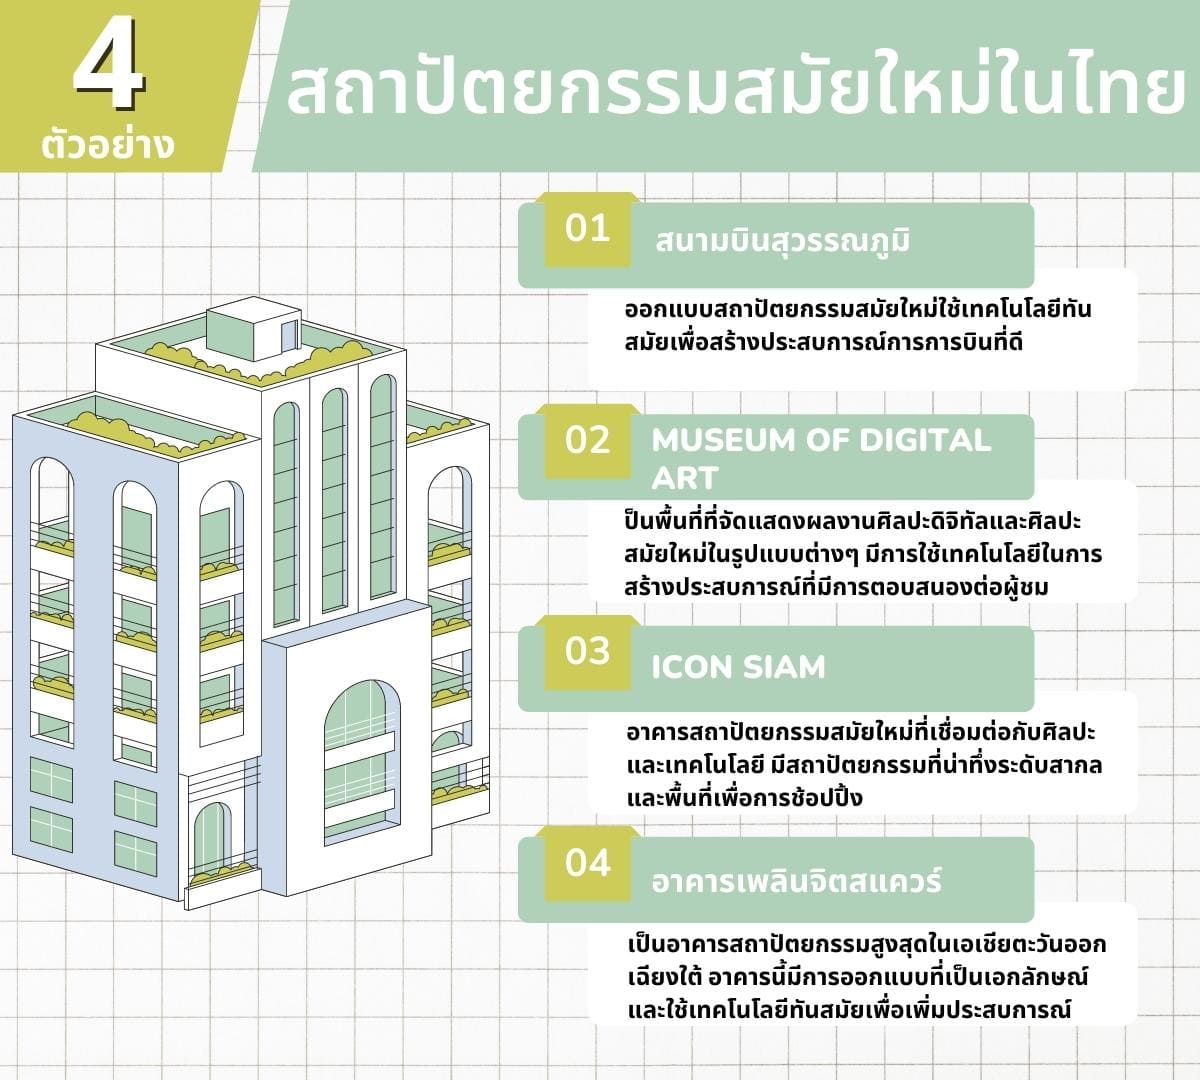 4 สถาปัตยกรรมสมัยใหม่ในไทย